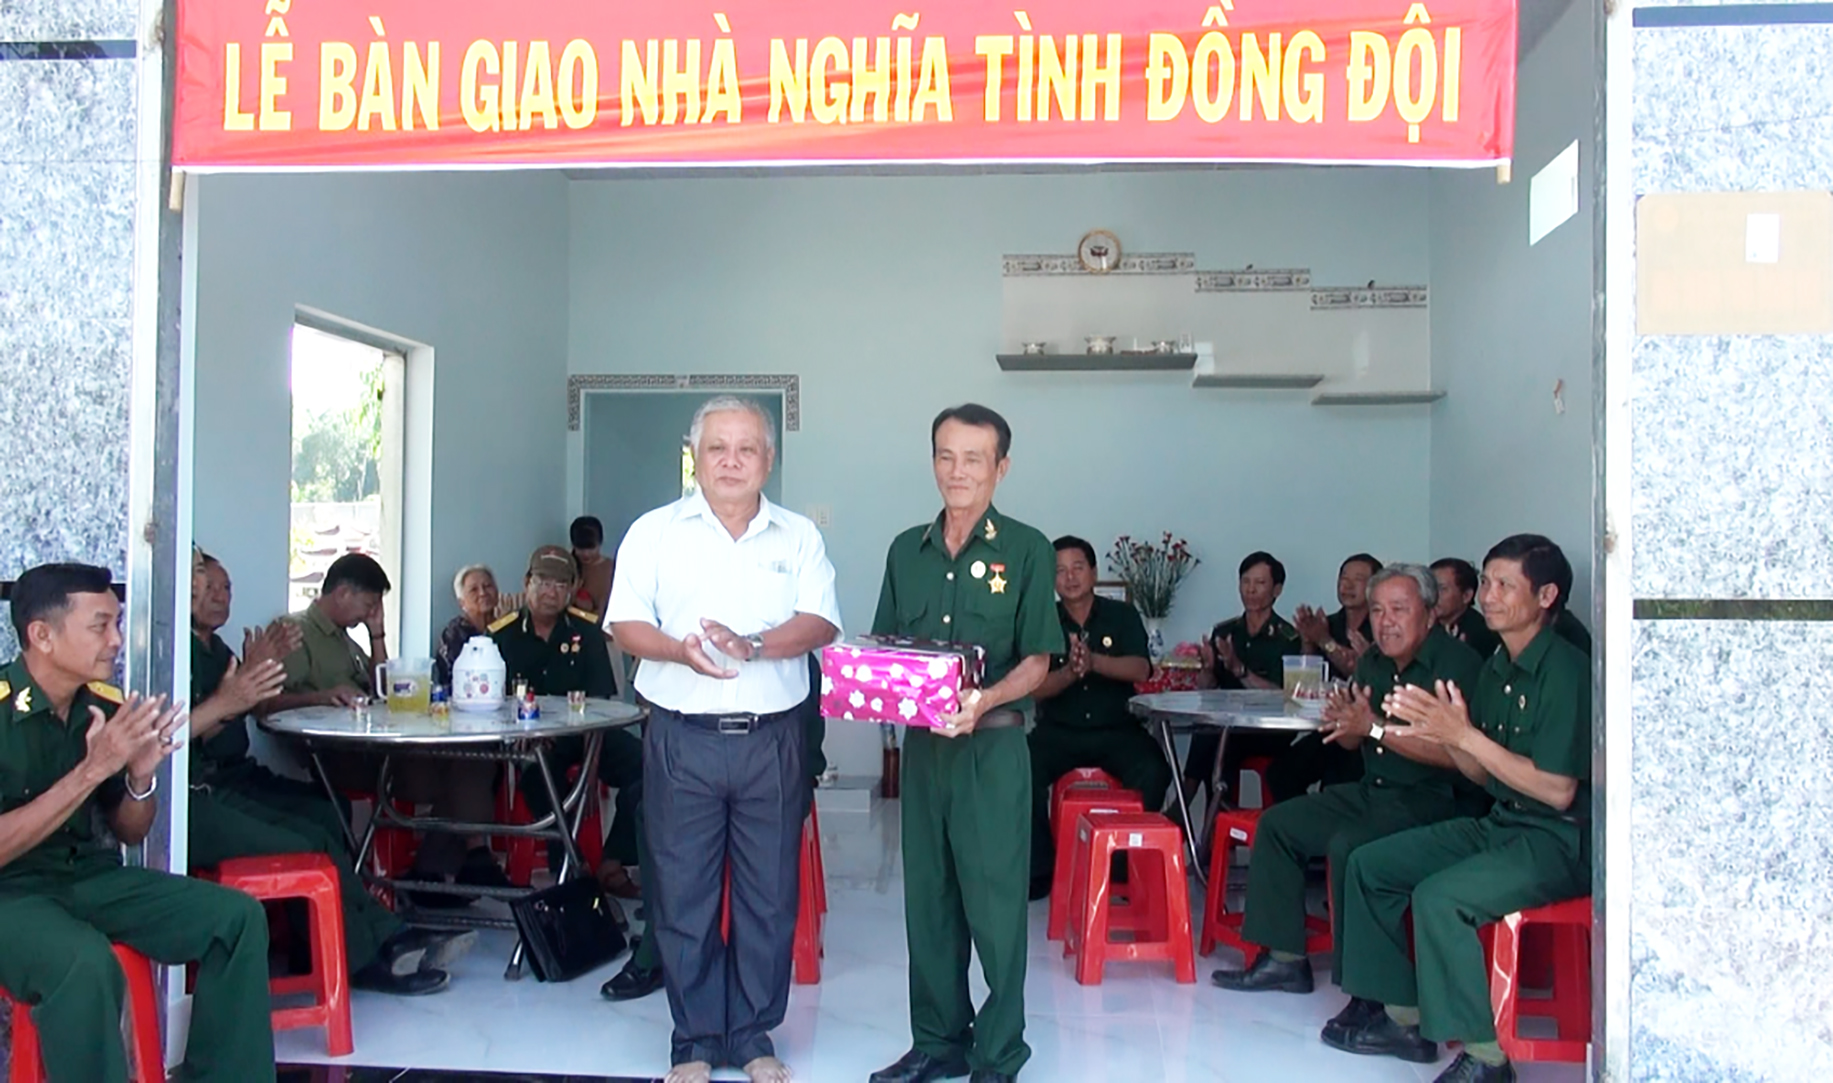 Ông Nguyễn Văn Quằn (bên trái), Bí thư Đảng ủy xã An Ngãi tặng quà cho CCB Đặng Văn Phước tại lễ bàn giao nhà “Nghĩa tình đồng đội”.